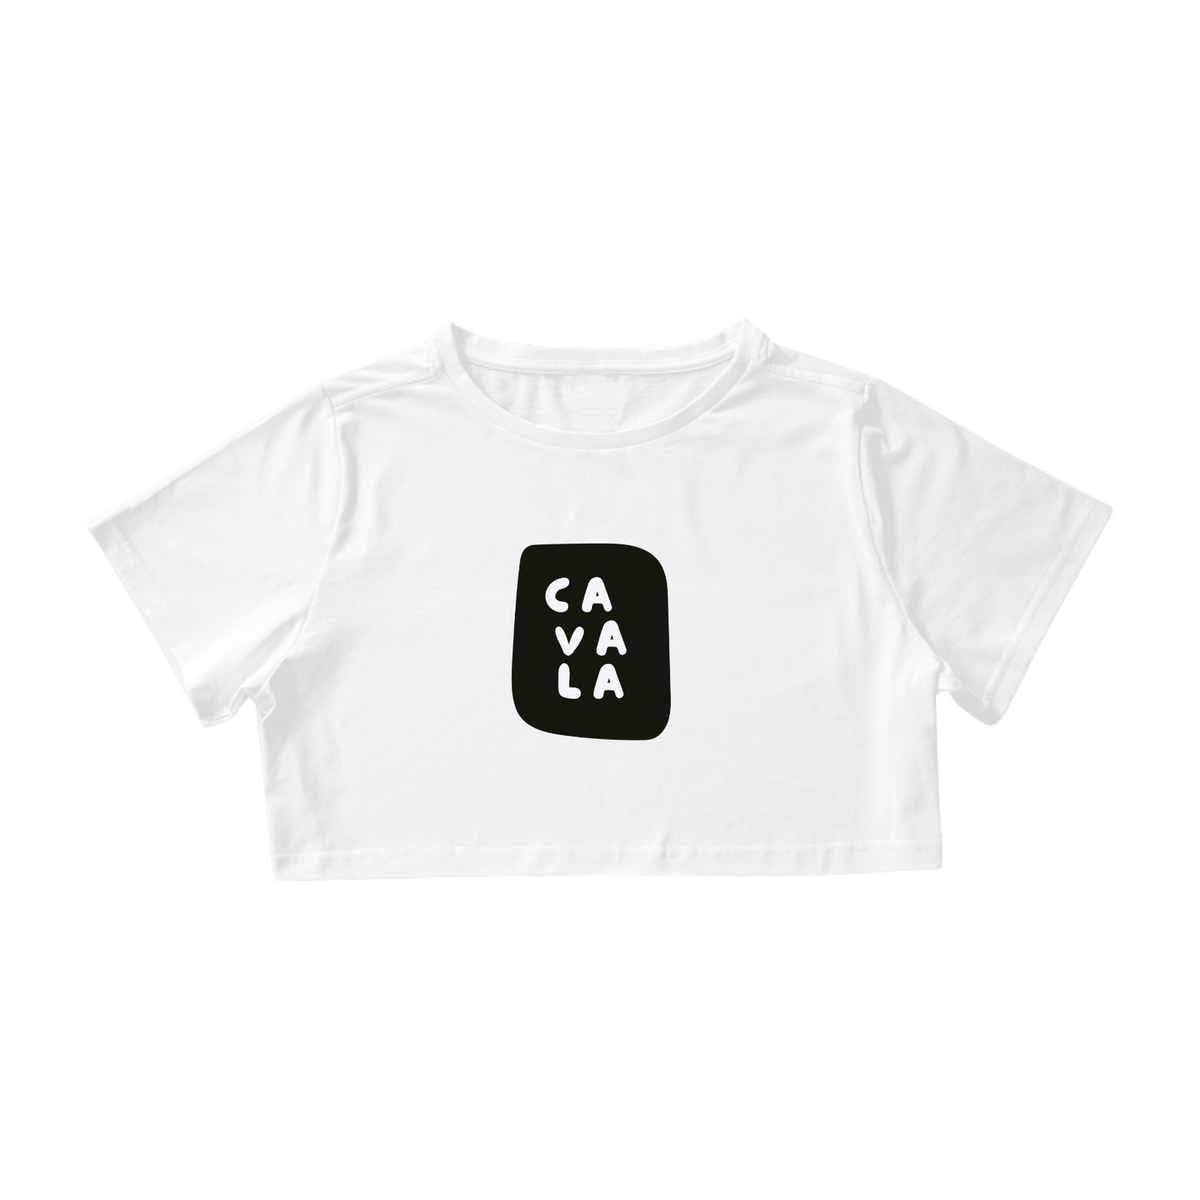 Nome do produto: Camisa Cropped / Cavala